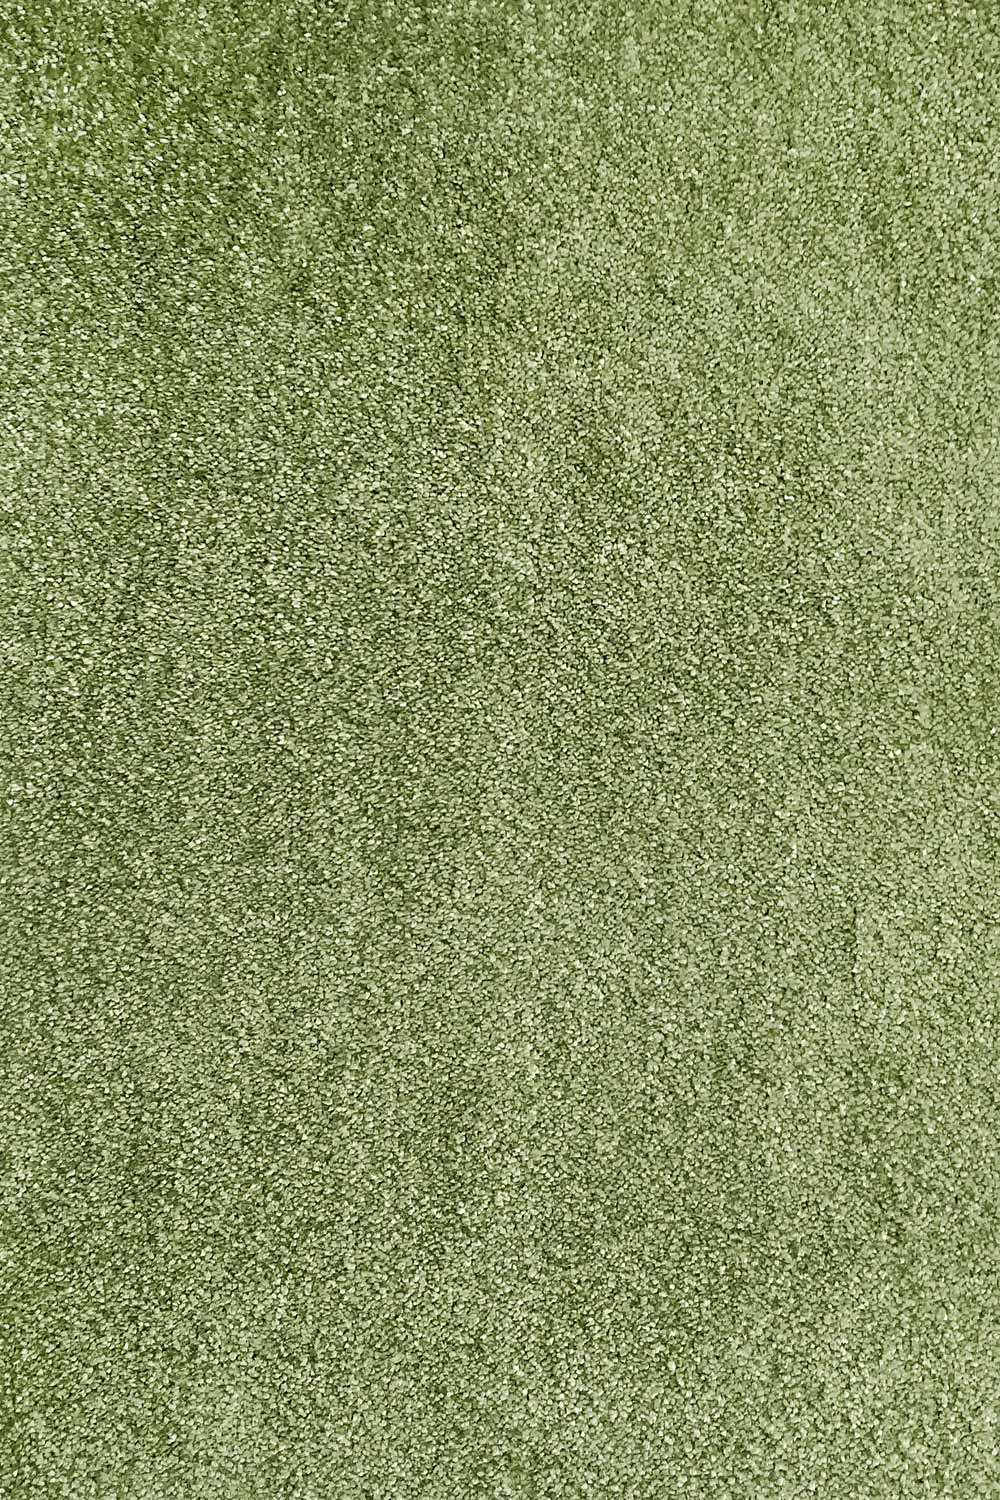 Metrážový koberec AVELINO 23 400 cm